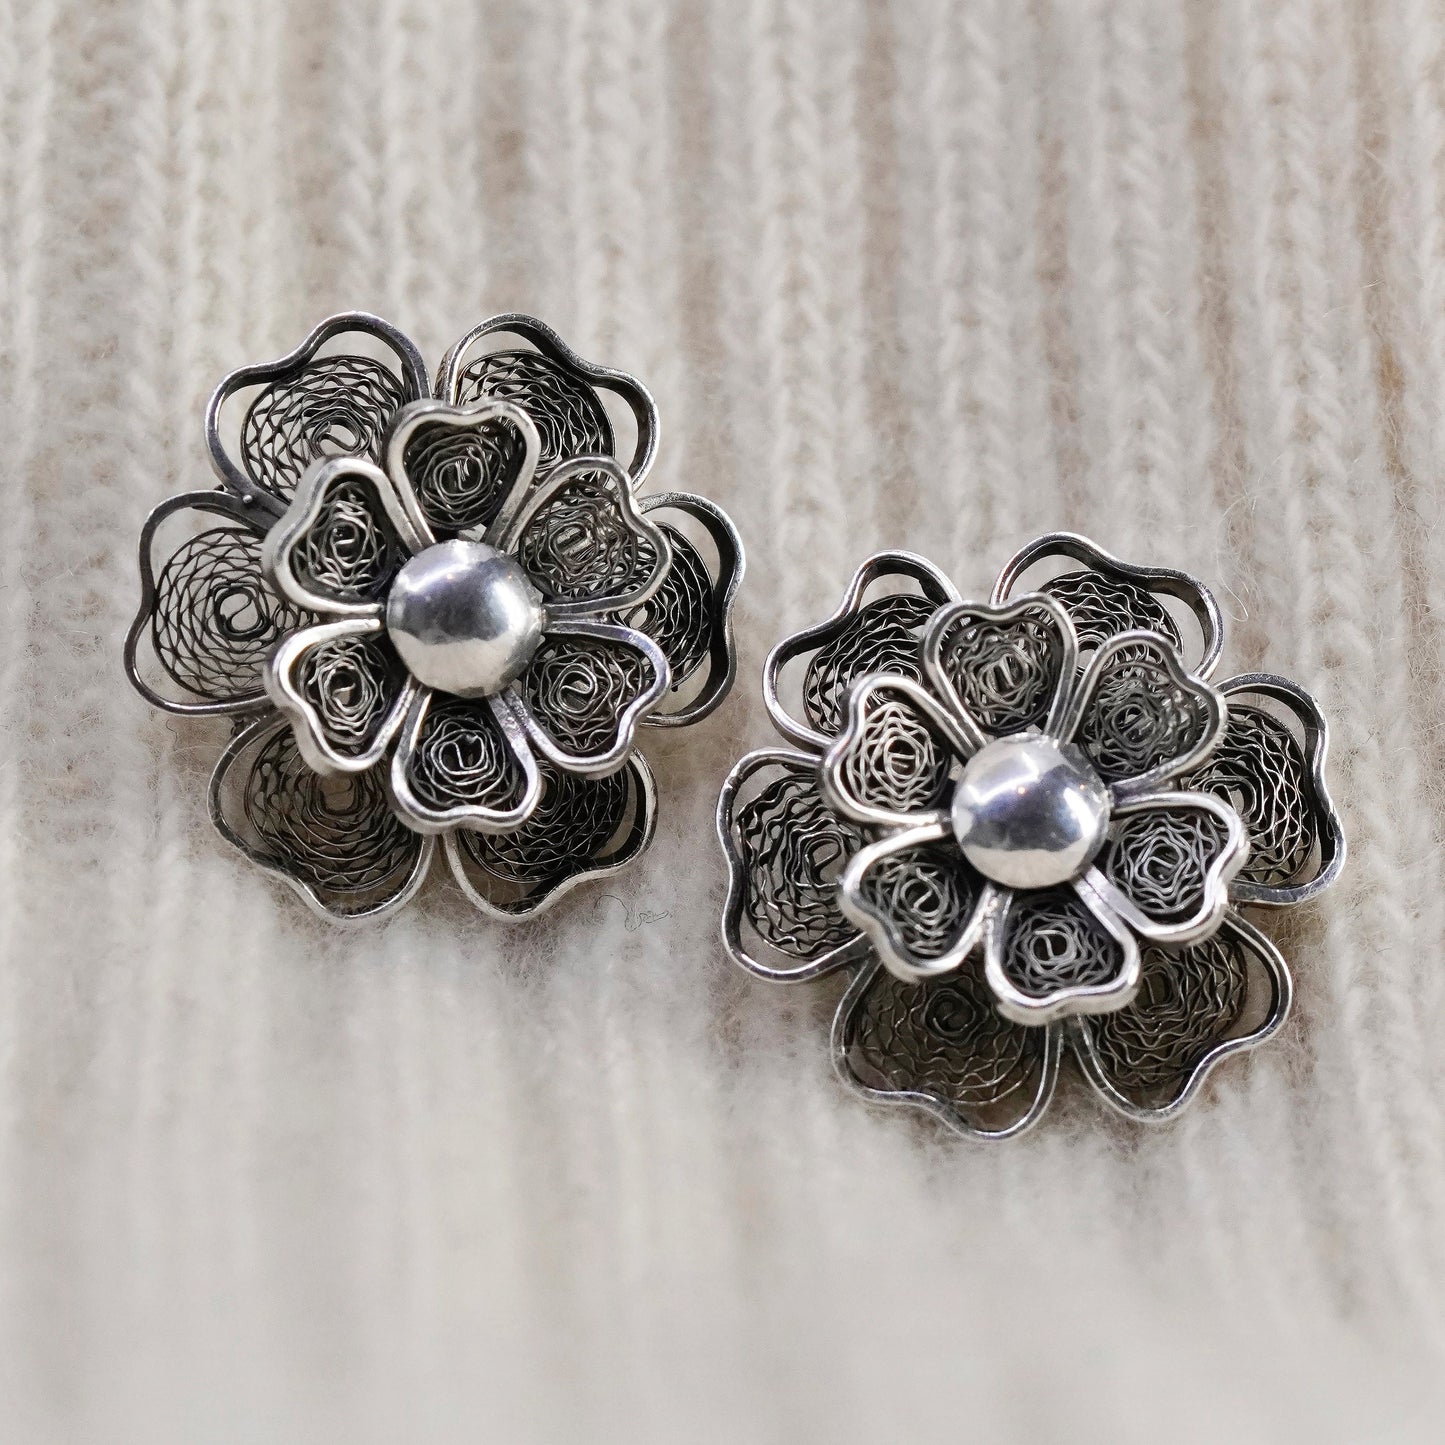 Vintage sterling silver handmade earrings, 925 filigree flower studs